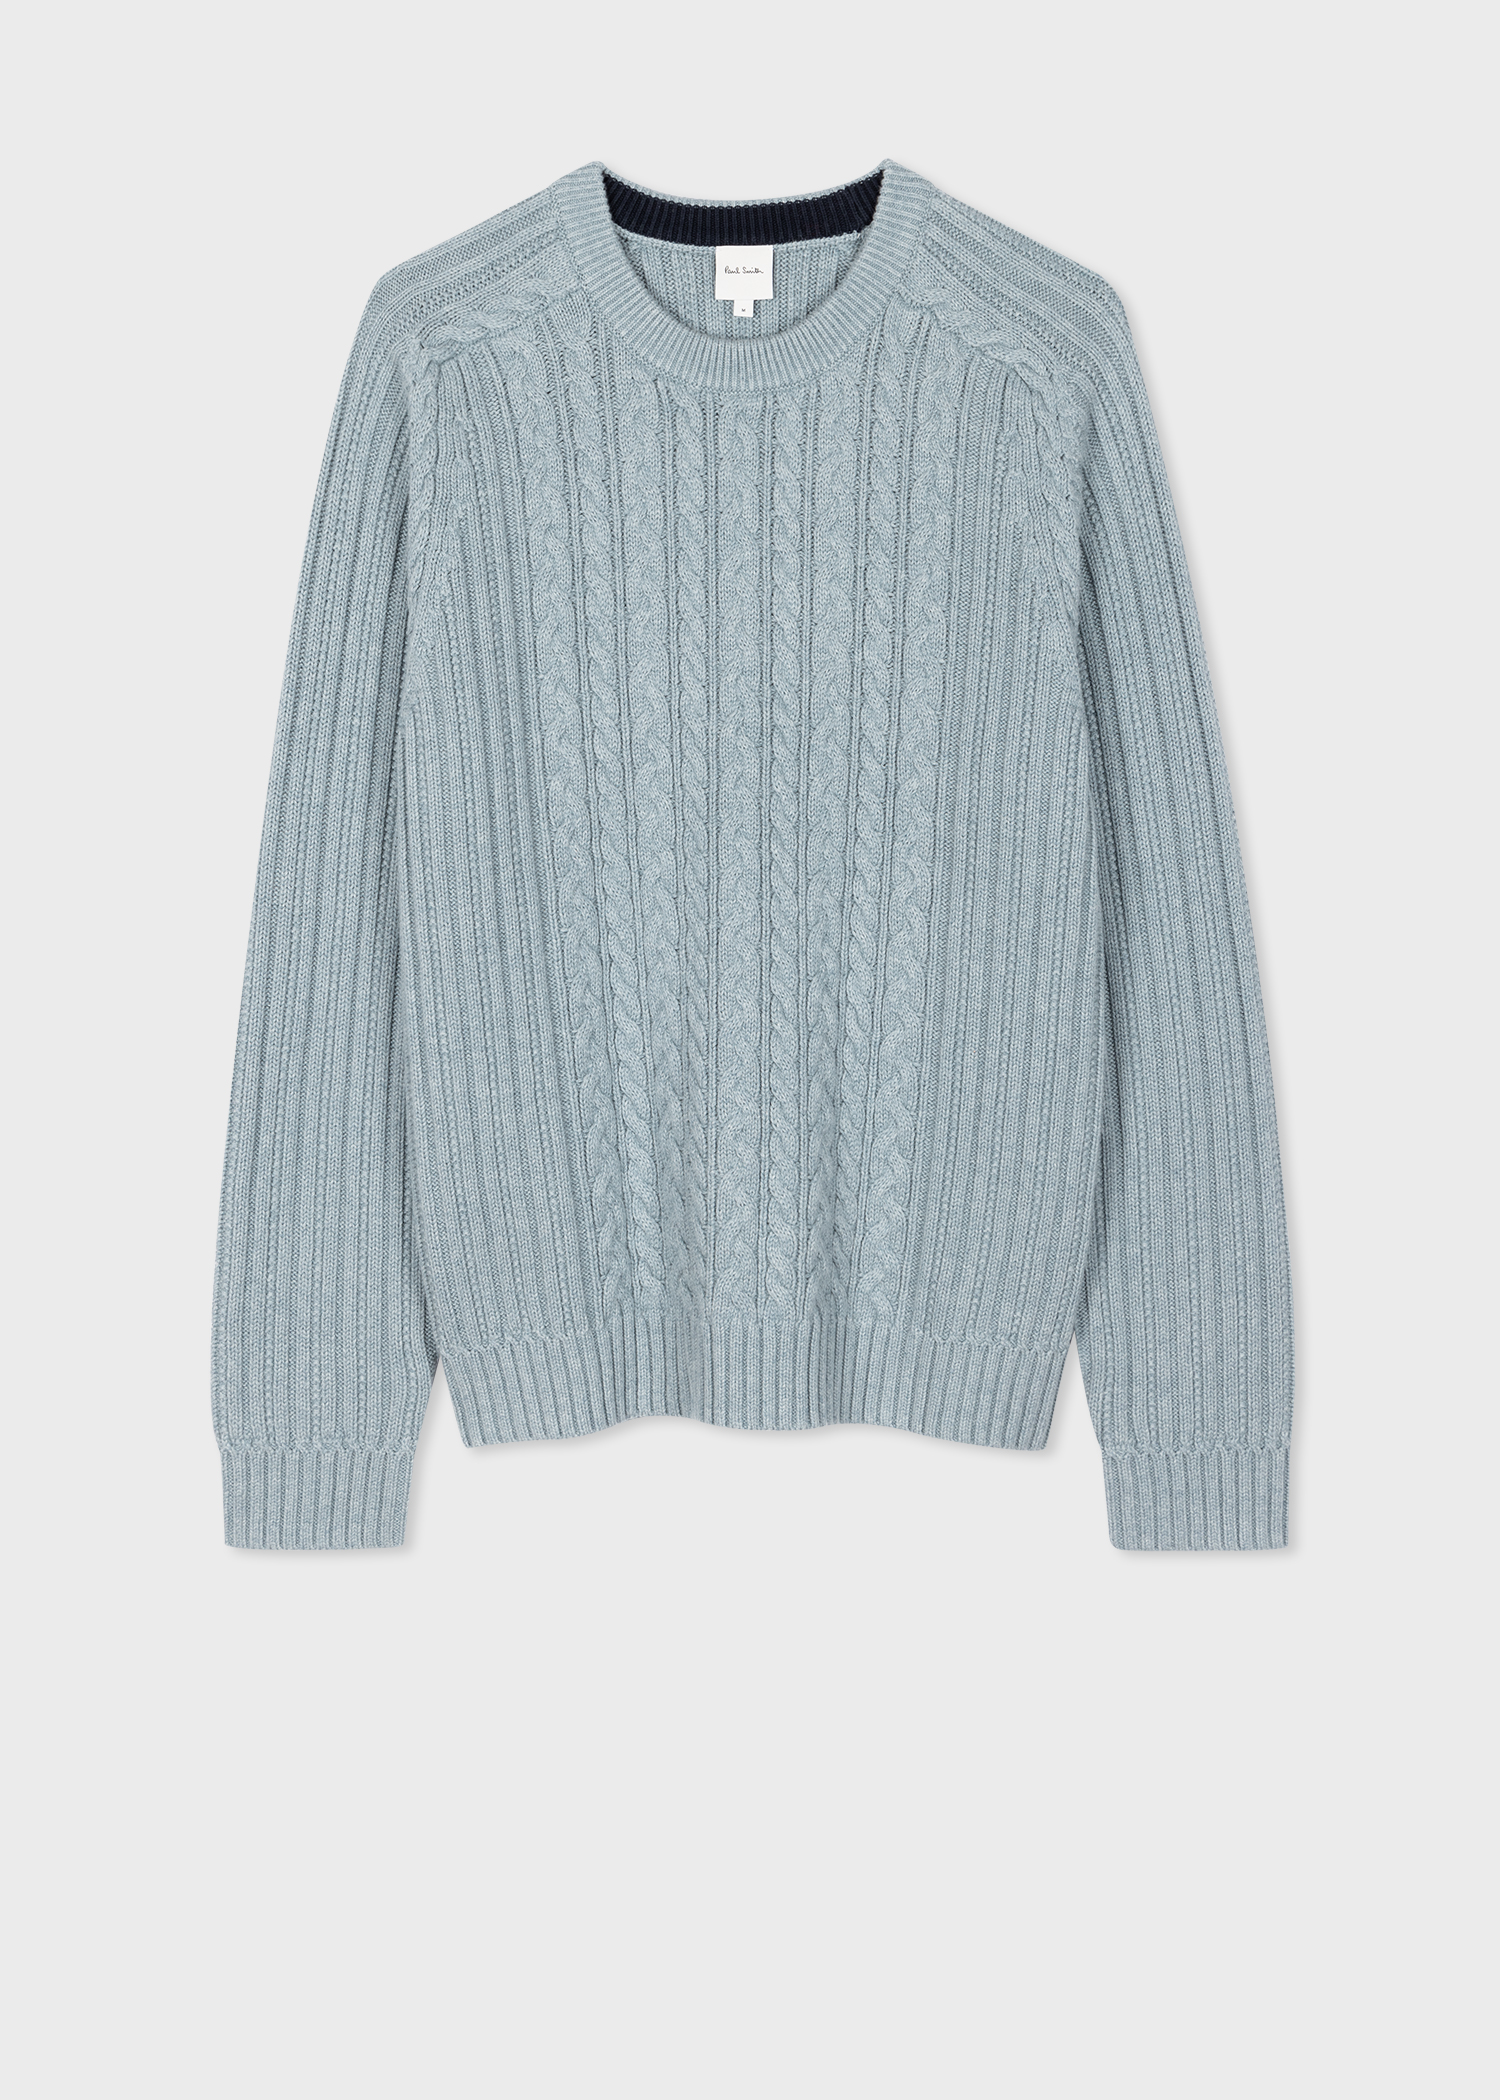 Men's Pale Blue Cotton-Cashmere Cable Knit Sweater